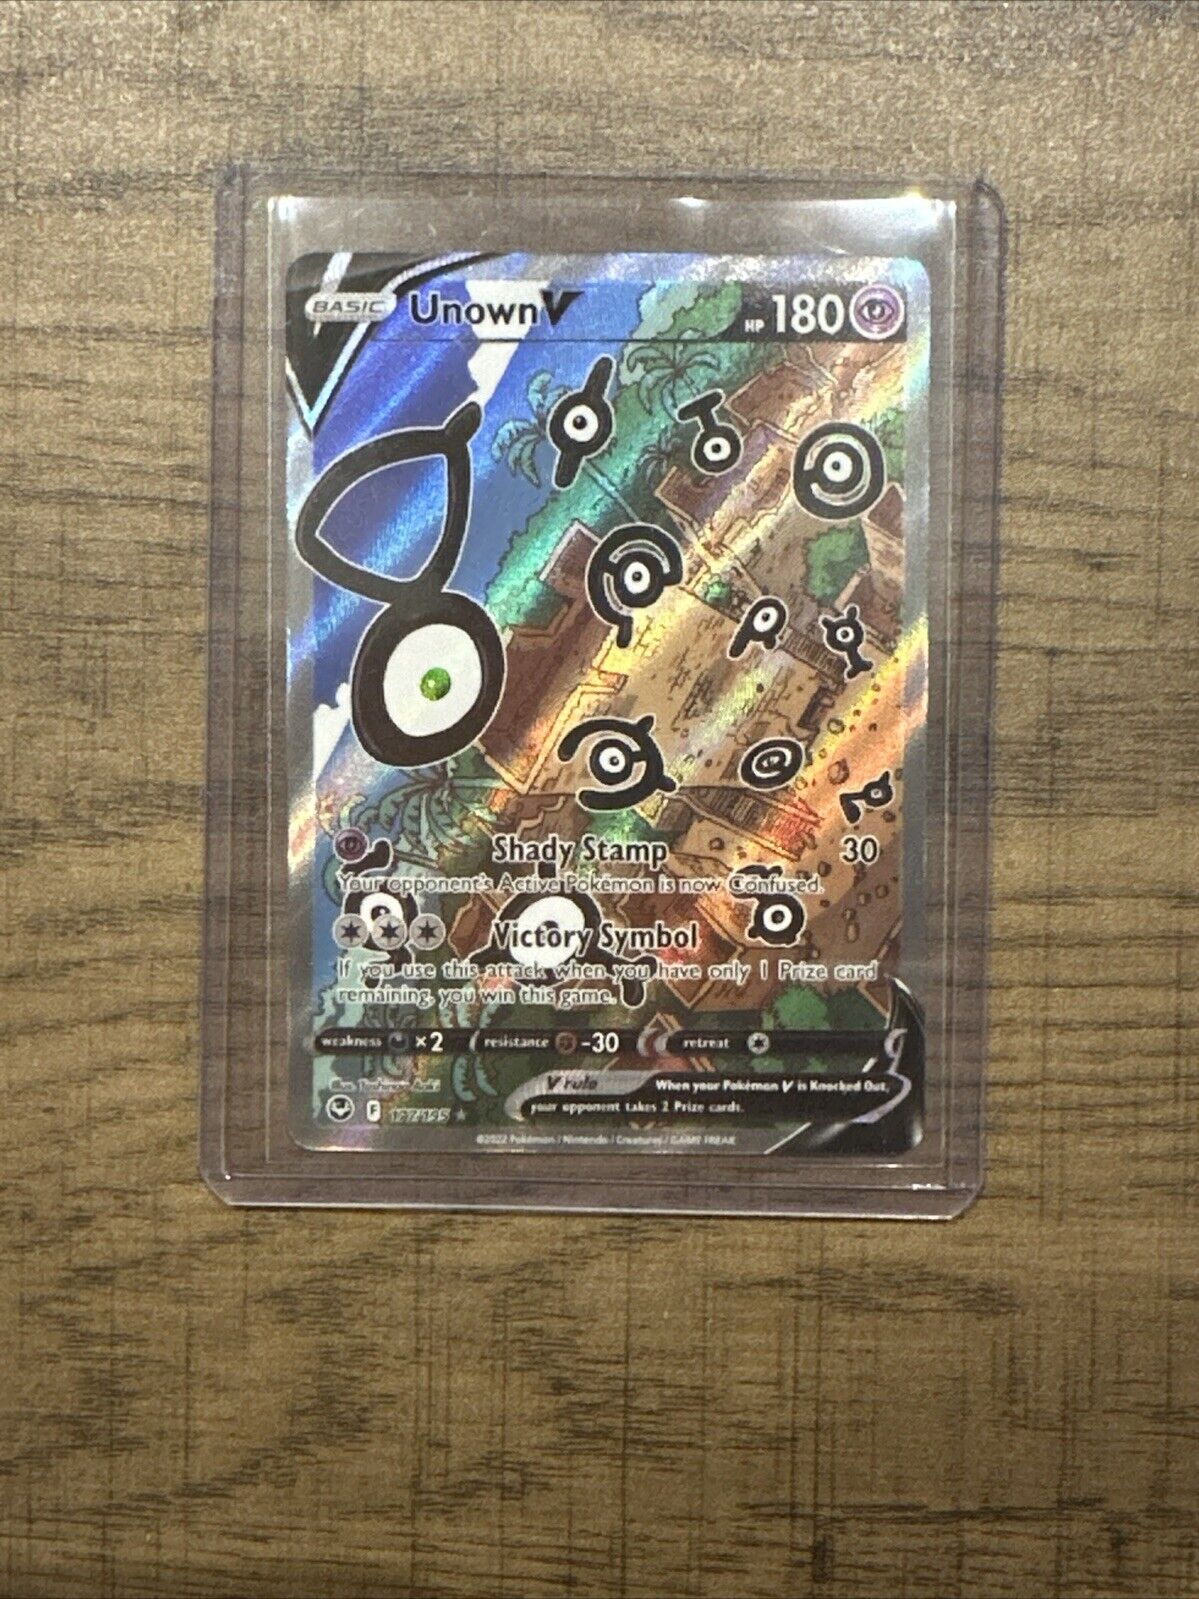  Unown V - Silver Tempest Pokémon TCG 177/195 Alt Art Mint Condition